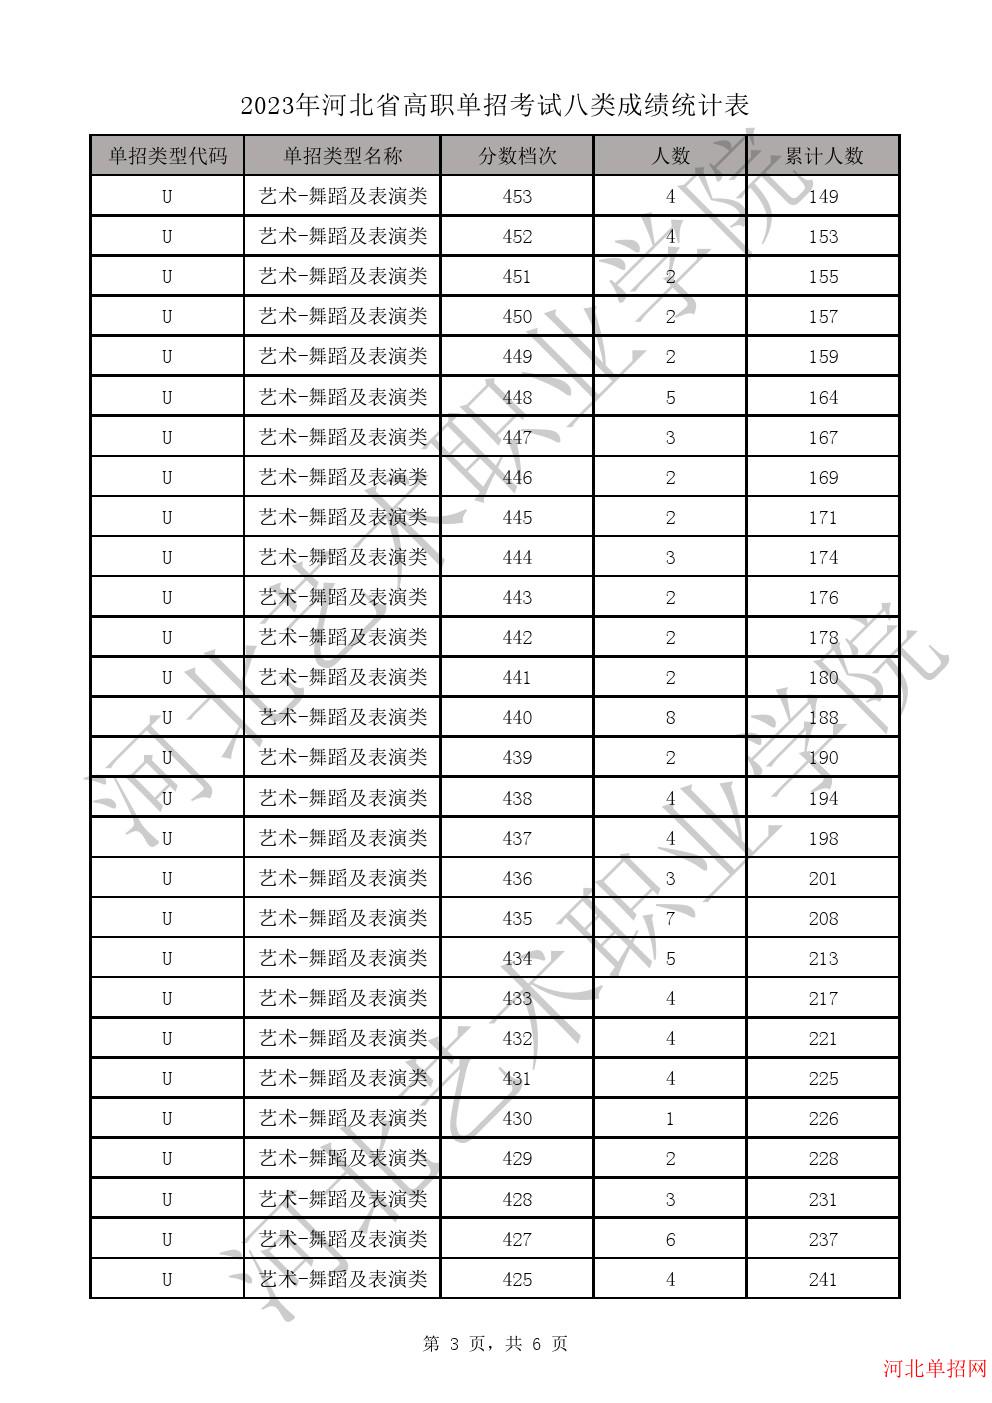 2023年河北省高职单招考试八类一分一档表-U艺术-舞蹈及表演类一分一档表 图3